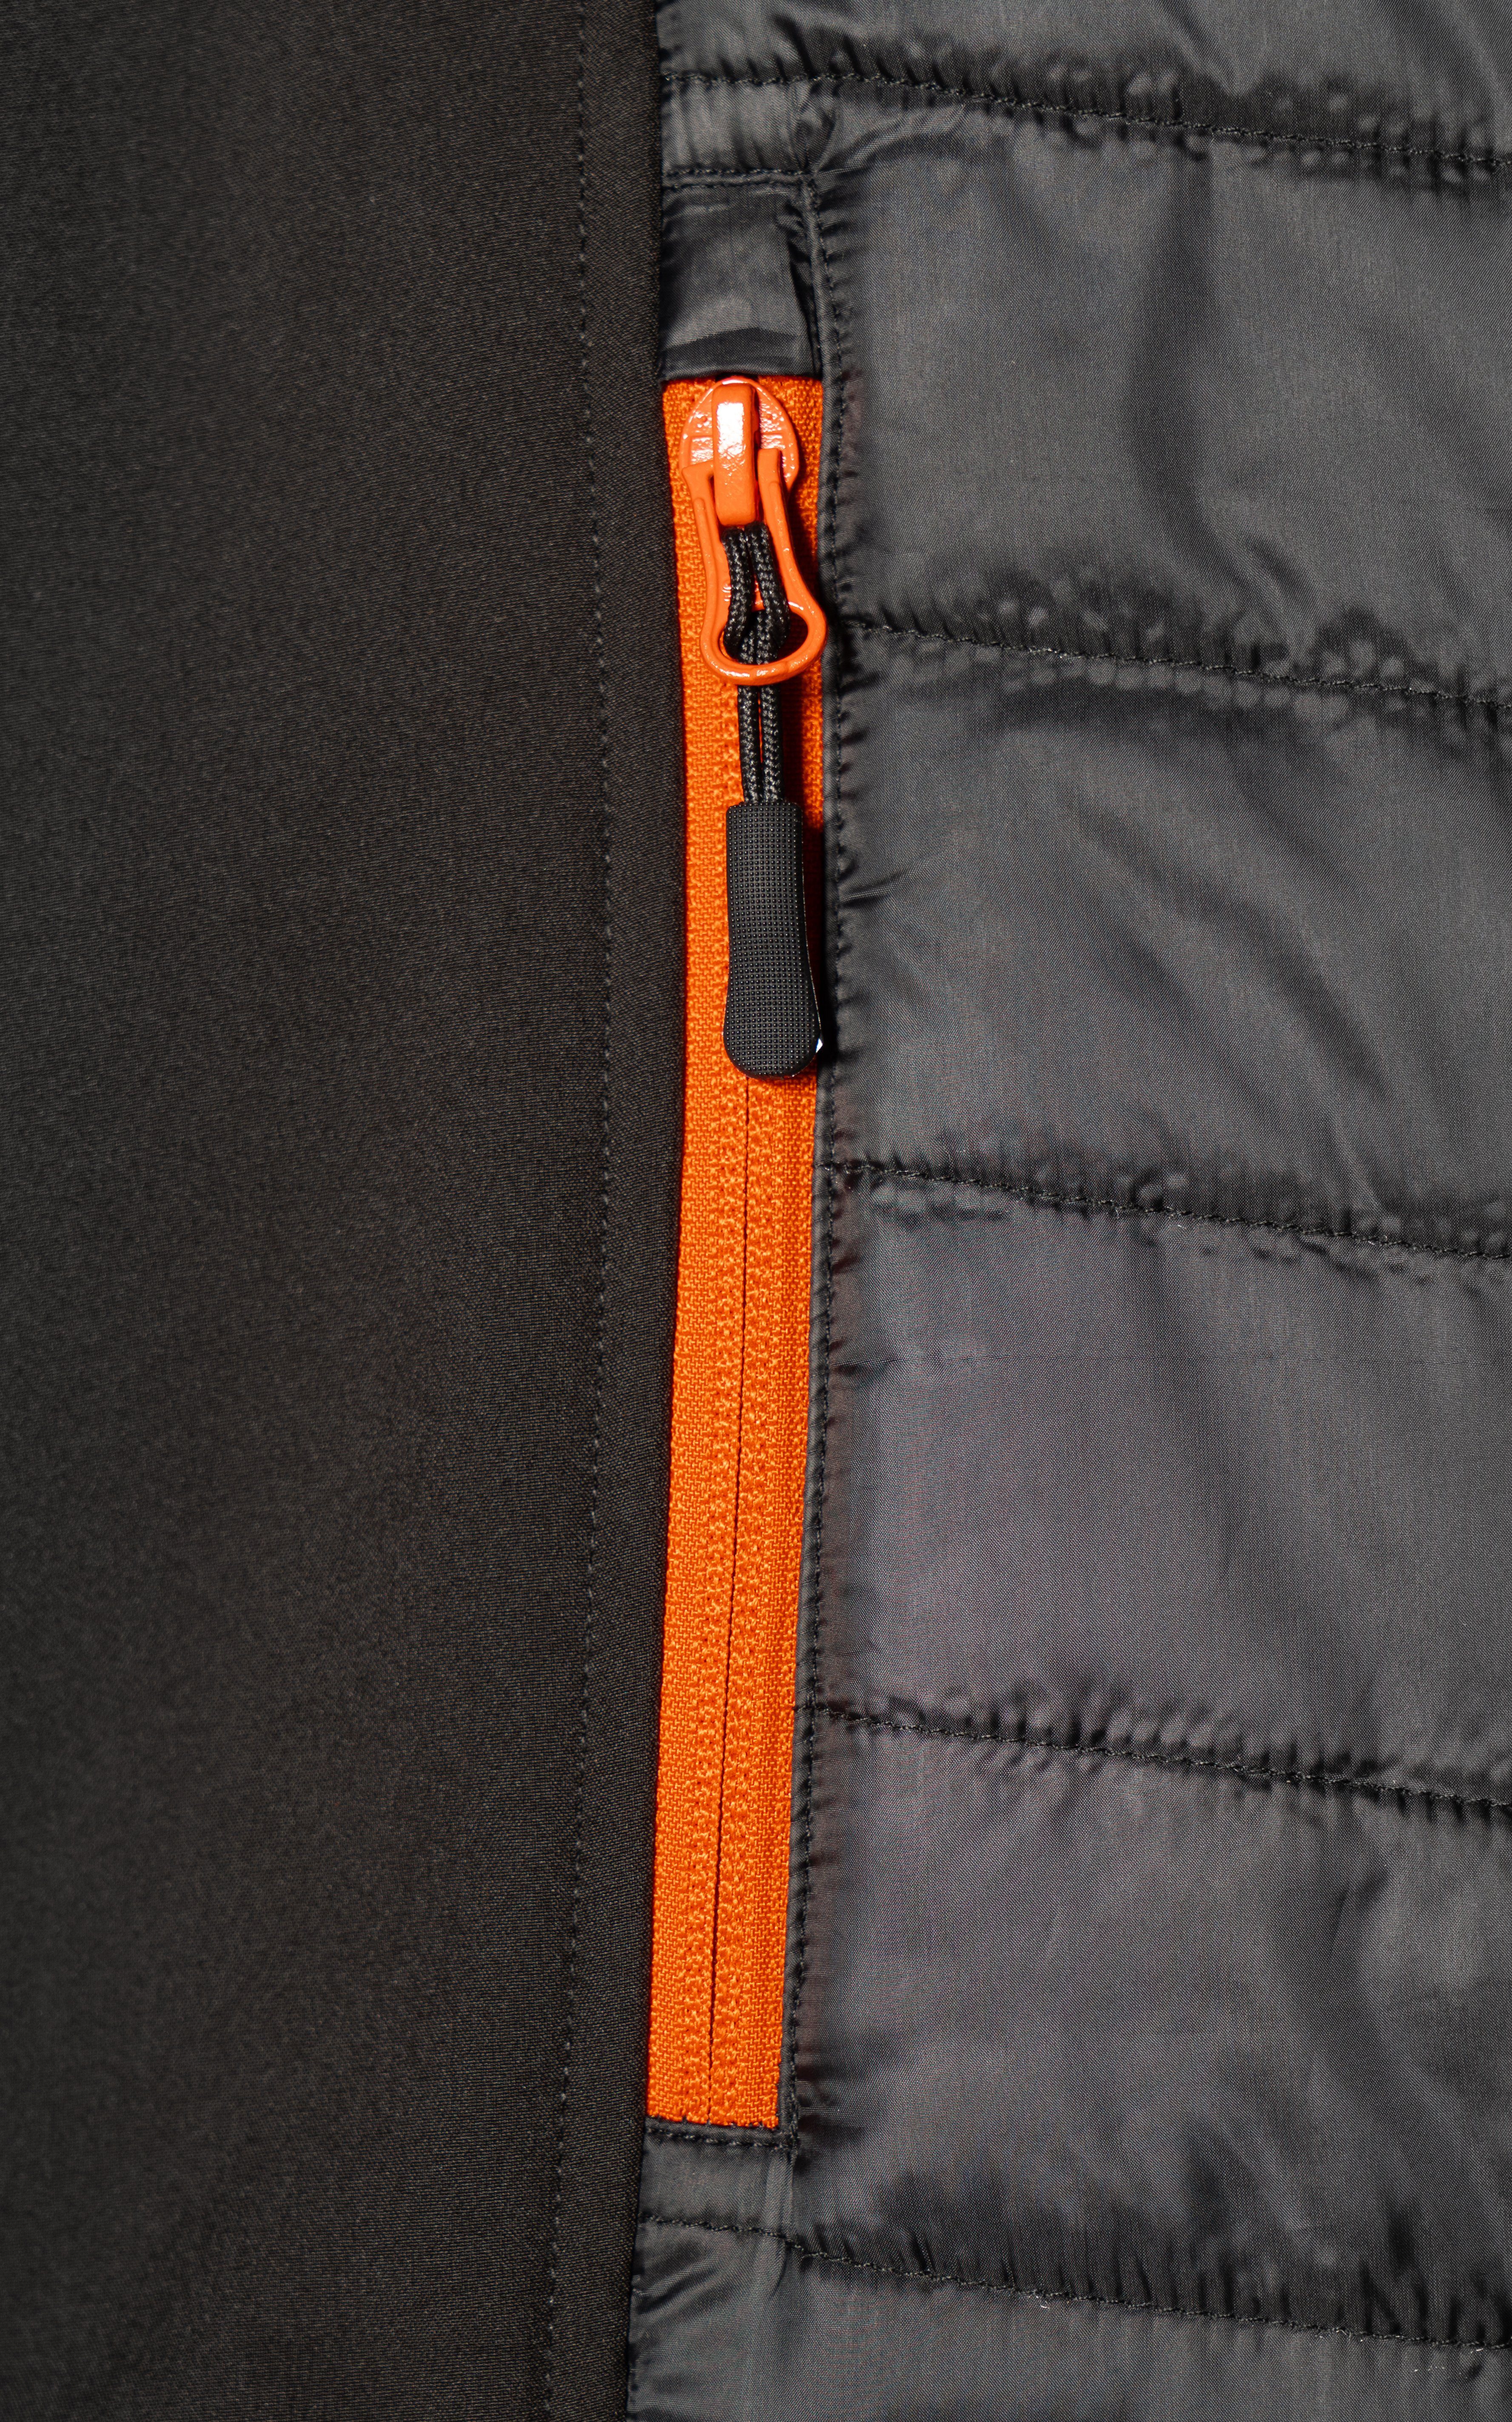 Northern Country Arbeitsweste durch verlängerter Seiteneinsätze (bequeme elastische und Kinnschutz, mit Taschen) leicht Rücken, angenehm mit wärmend Passform 3